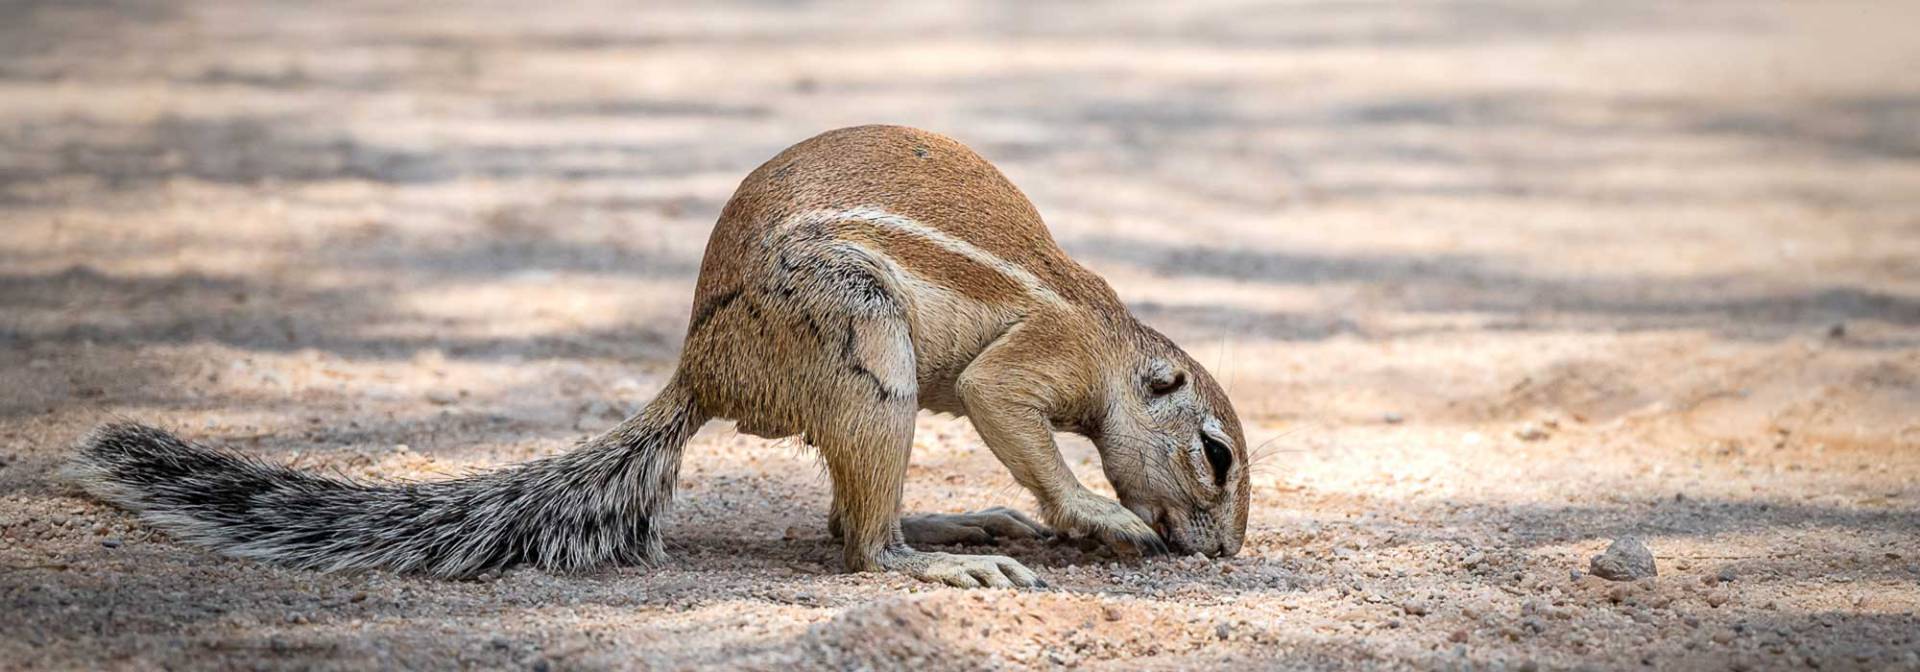 Etosha National Park - Ground squirrel 